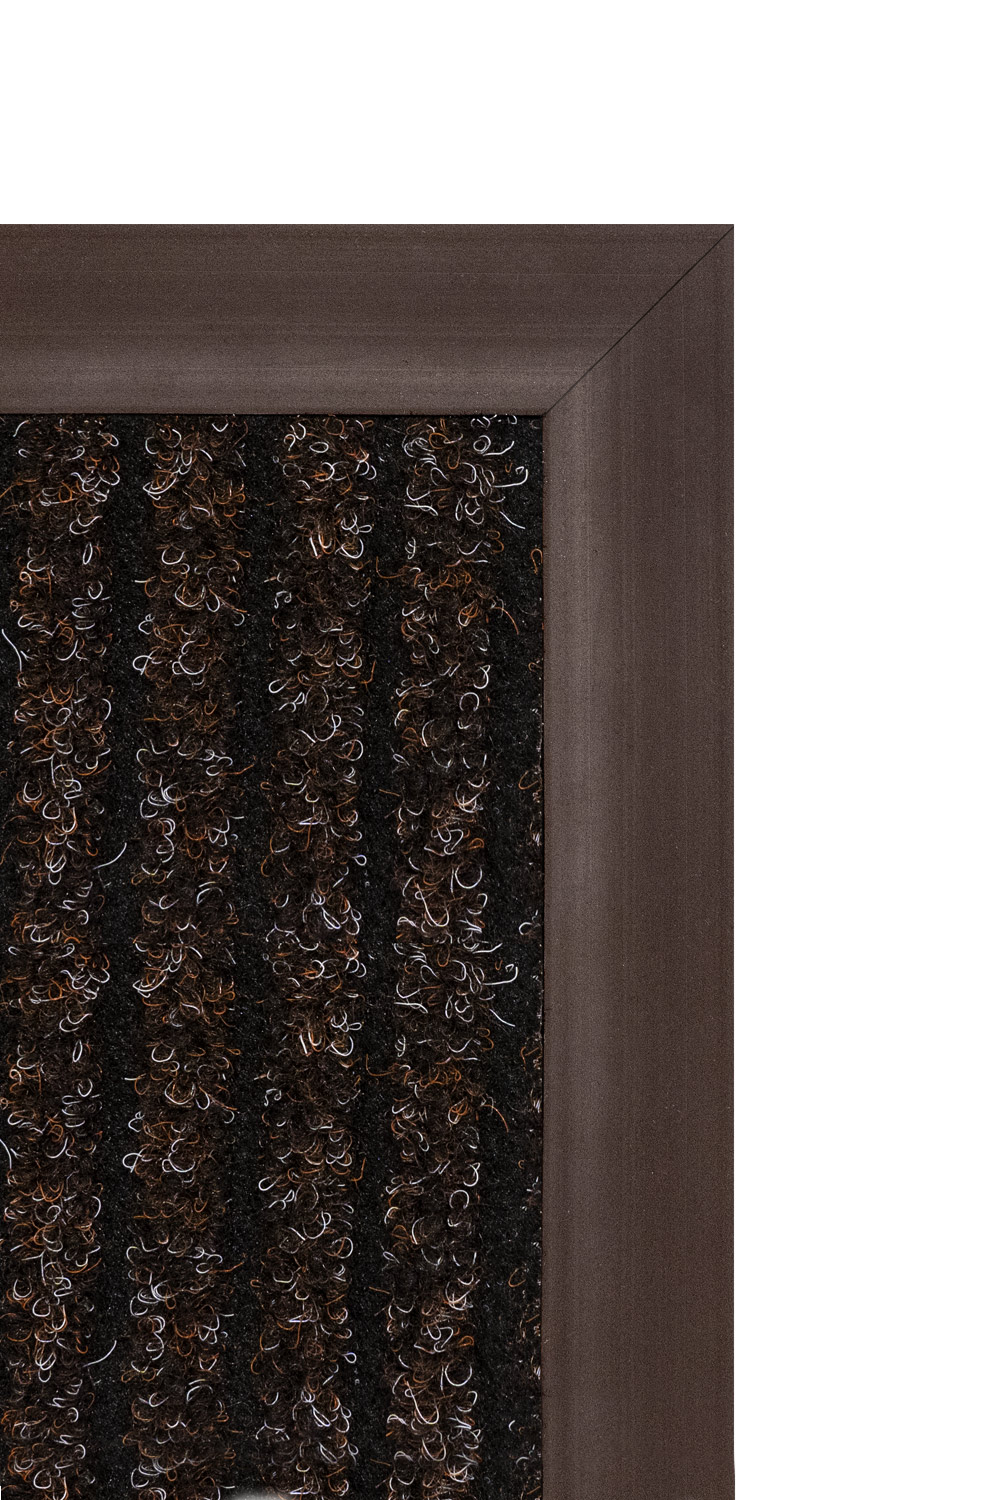 Gumová ukončovací lišta - hnědá 4,8x0,65 cm